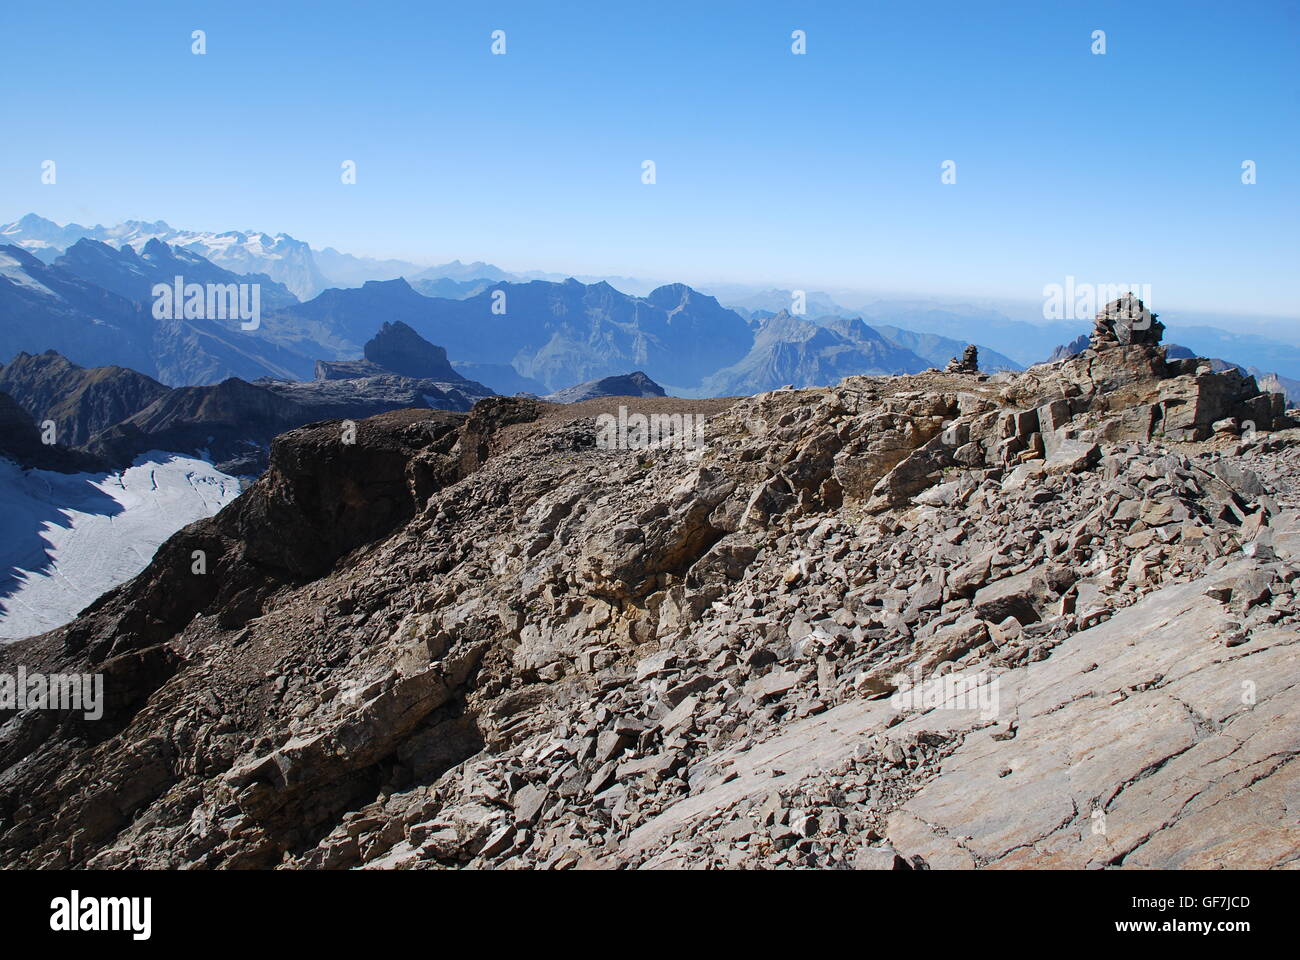 Vue panoramique, Alpes Suisses, les éboulis, les talus, la pierre tombale, bleu, brume, pics, neige, ciel bleu, copie espace, randonnées Banque D'Images